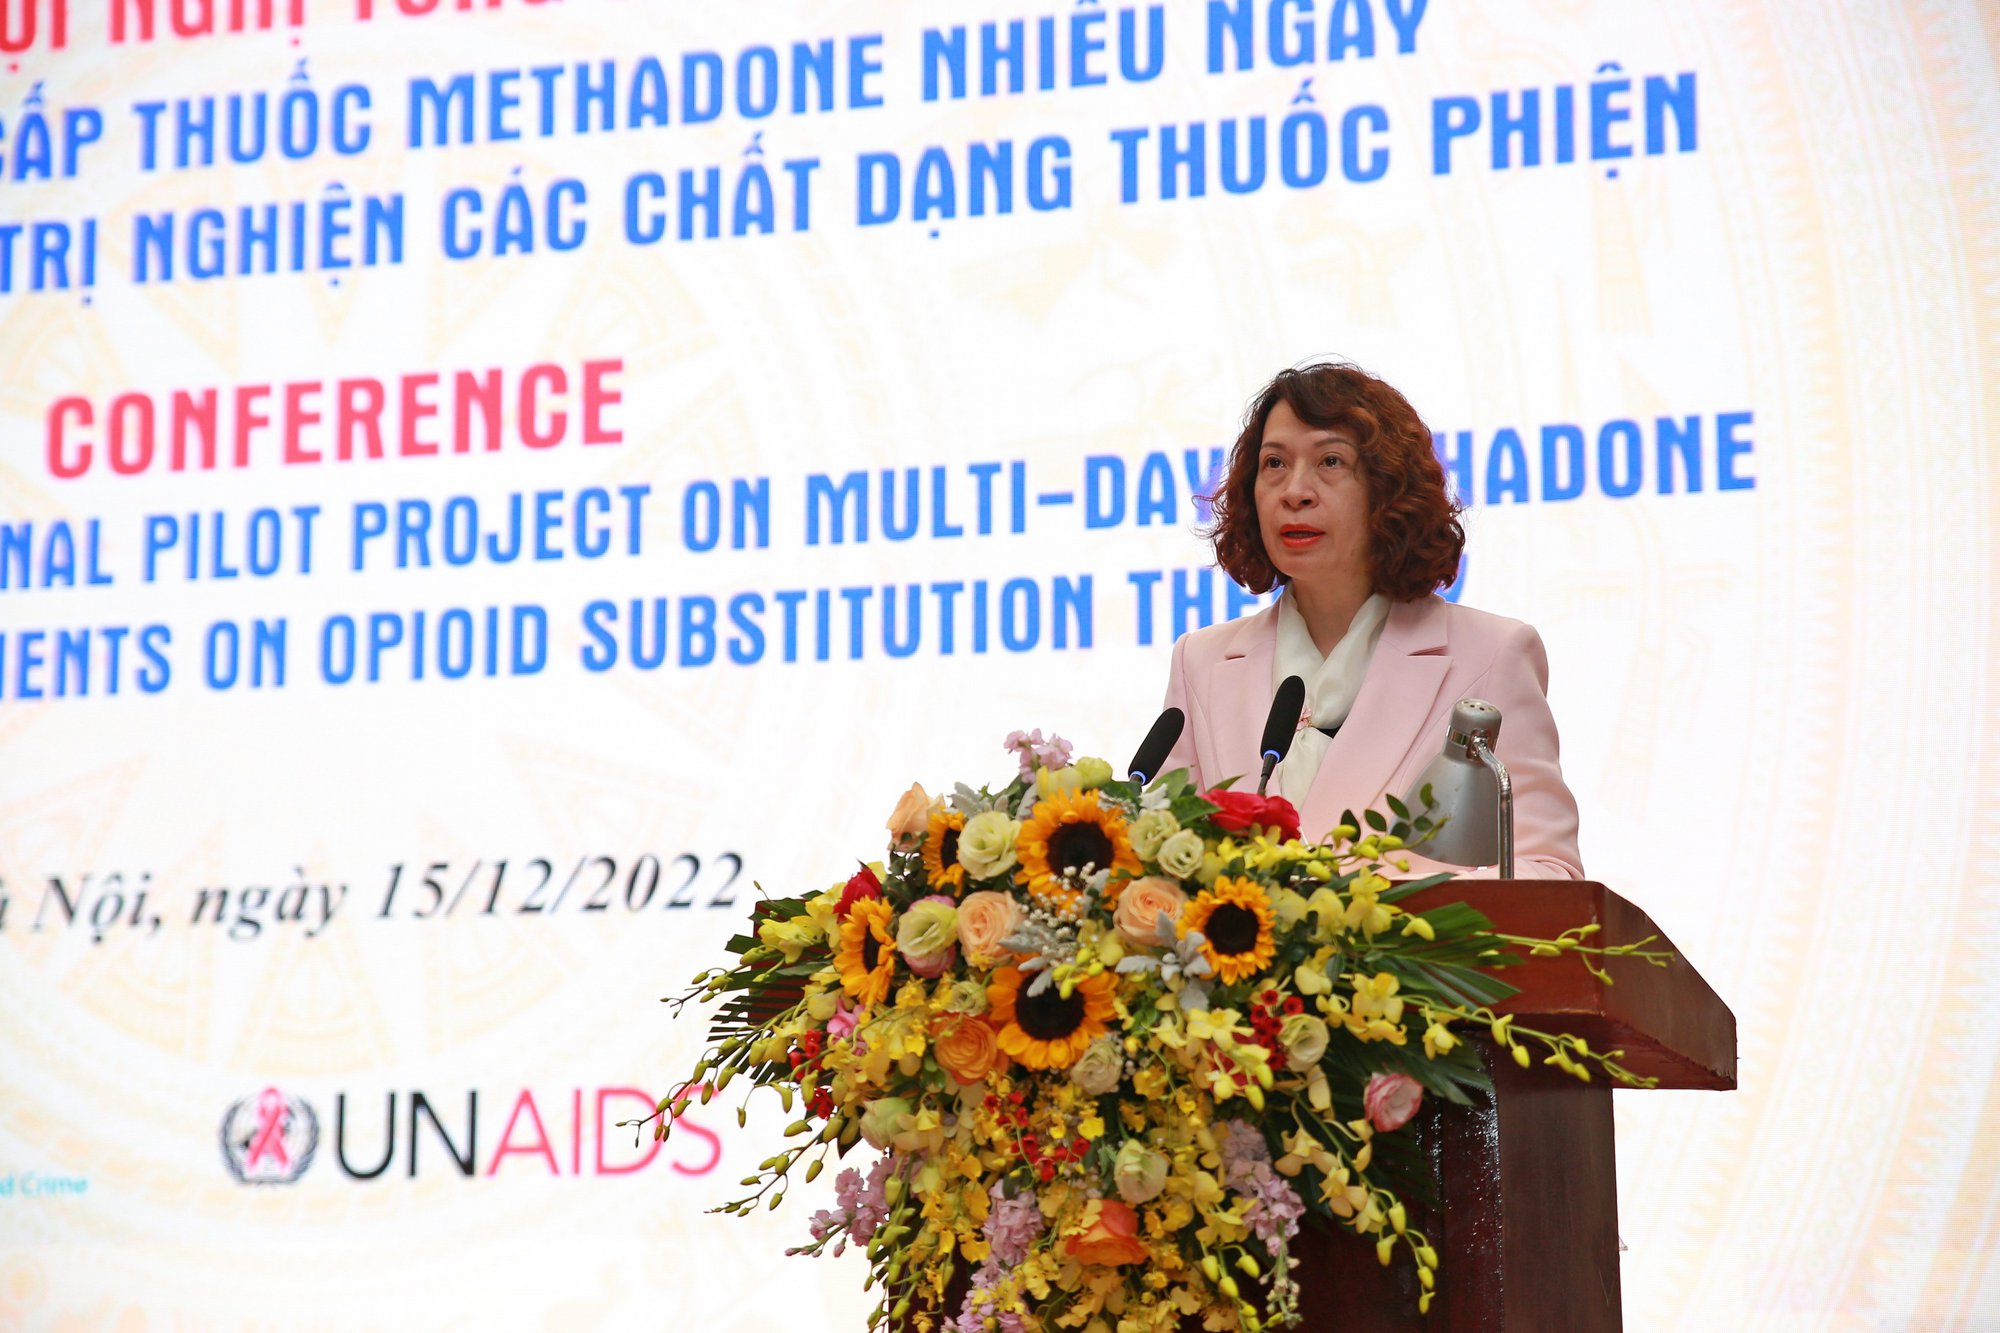 Mở rộng việc cấp phát thuốc methadone nhiều ngày ra toàn quốc - Ảnh 1.